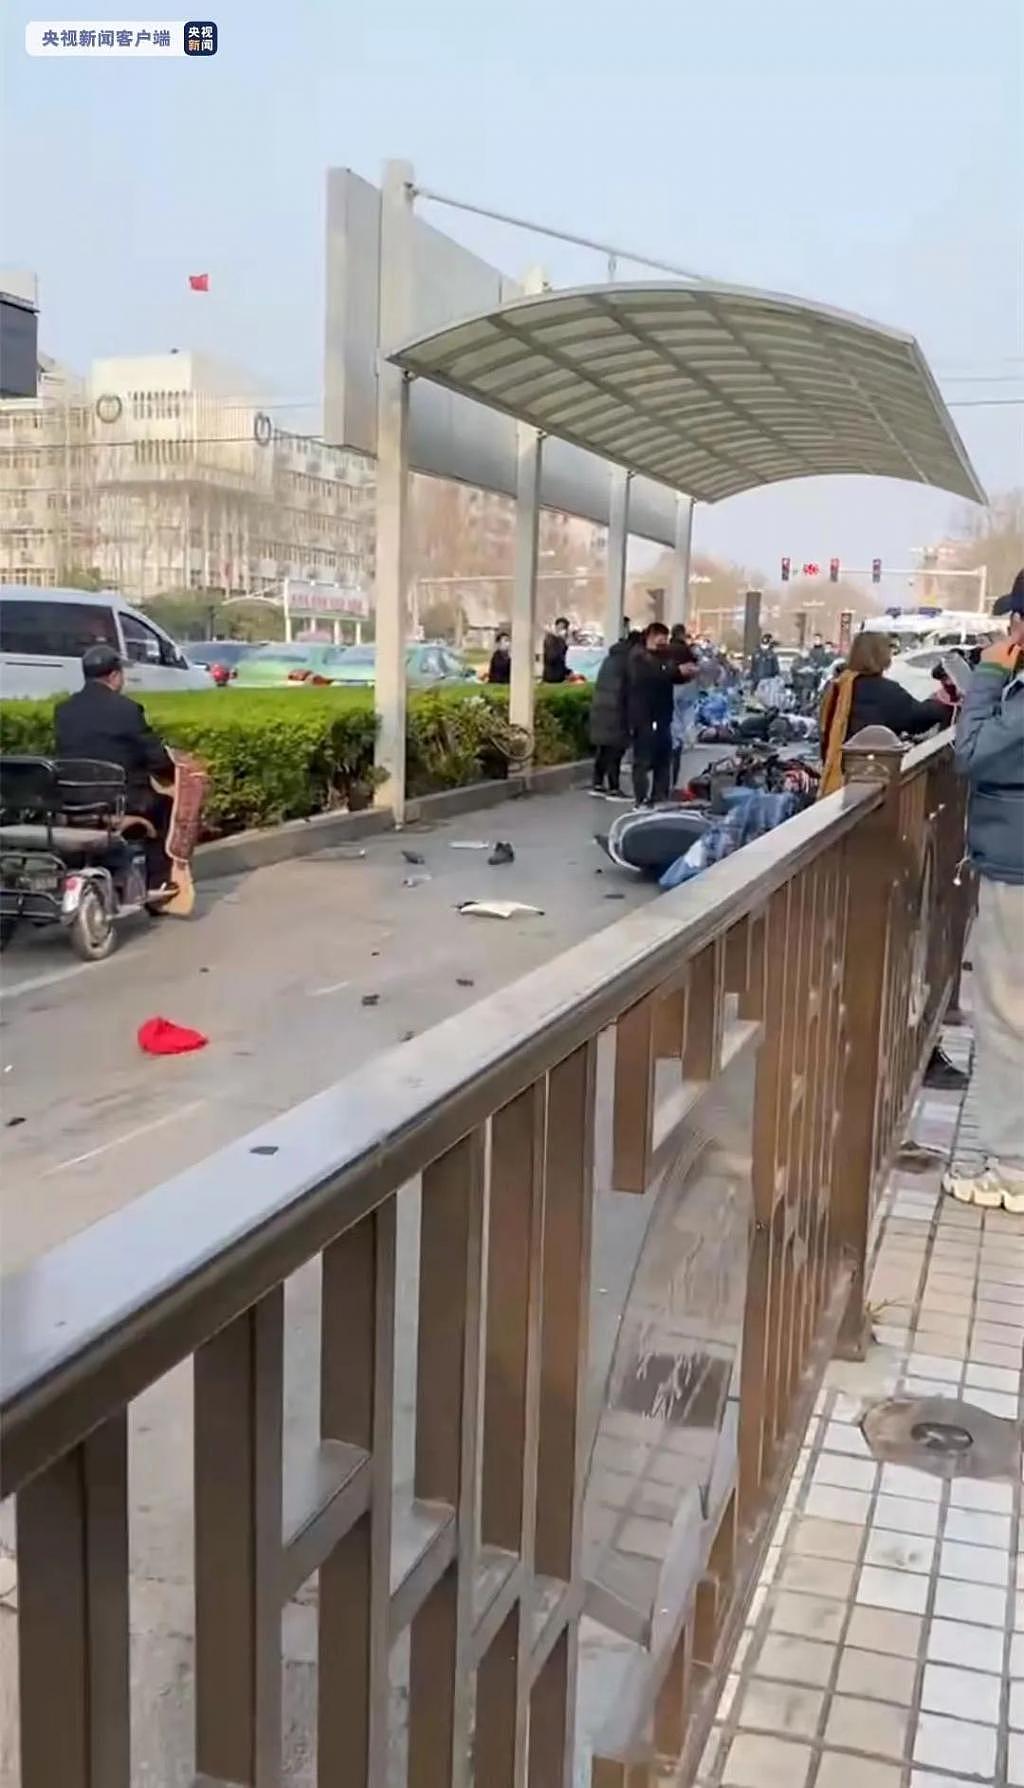 河北邯郸轿车撞上多辆非机动车 目前 4 人经抢救无效死亡 - 1